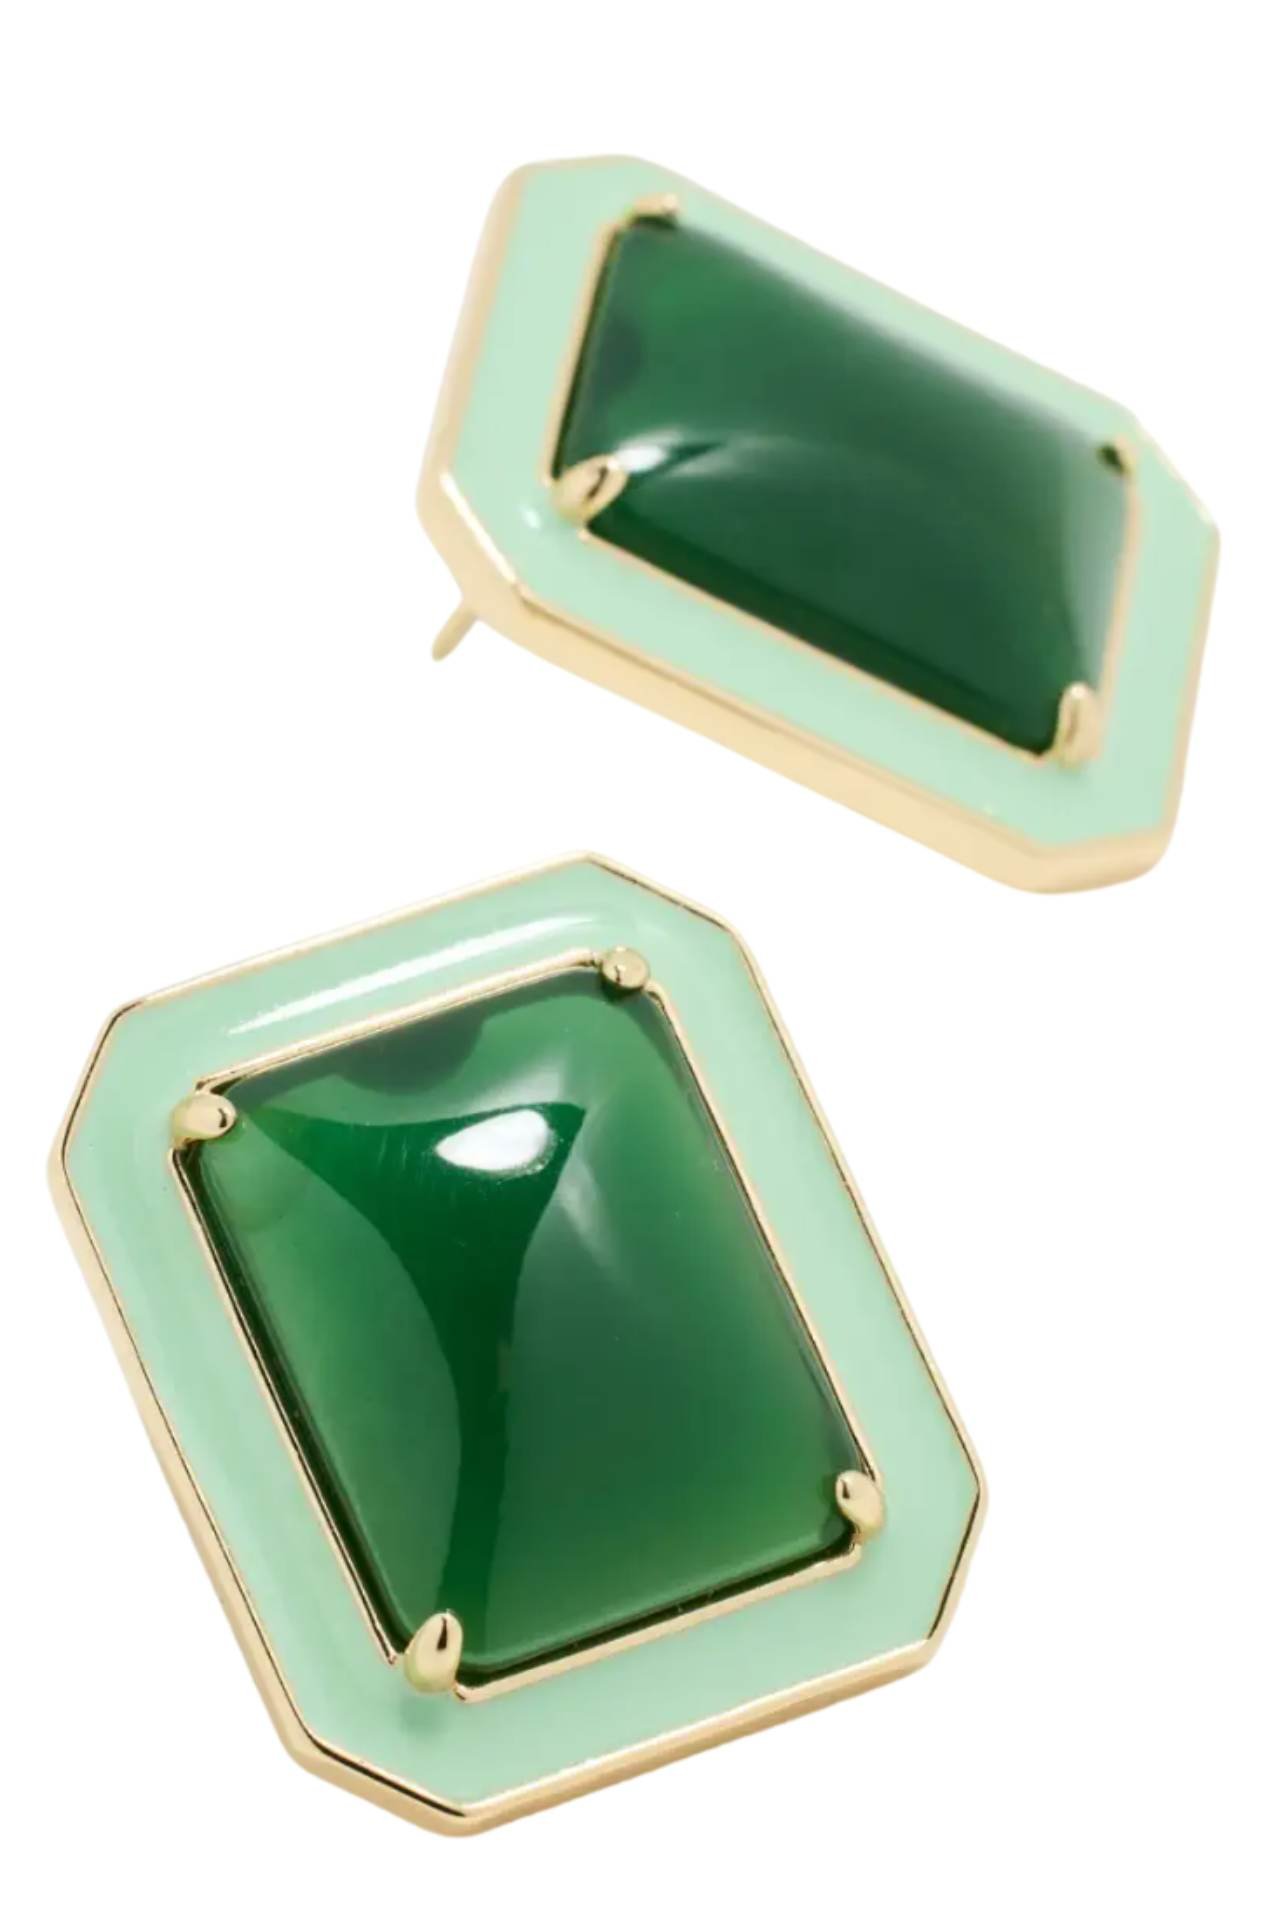 green jewelry earrings